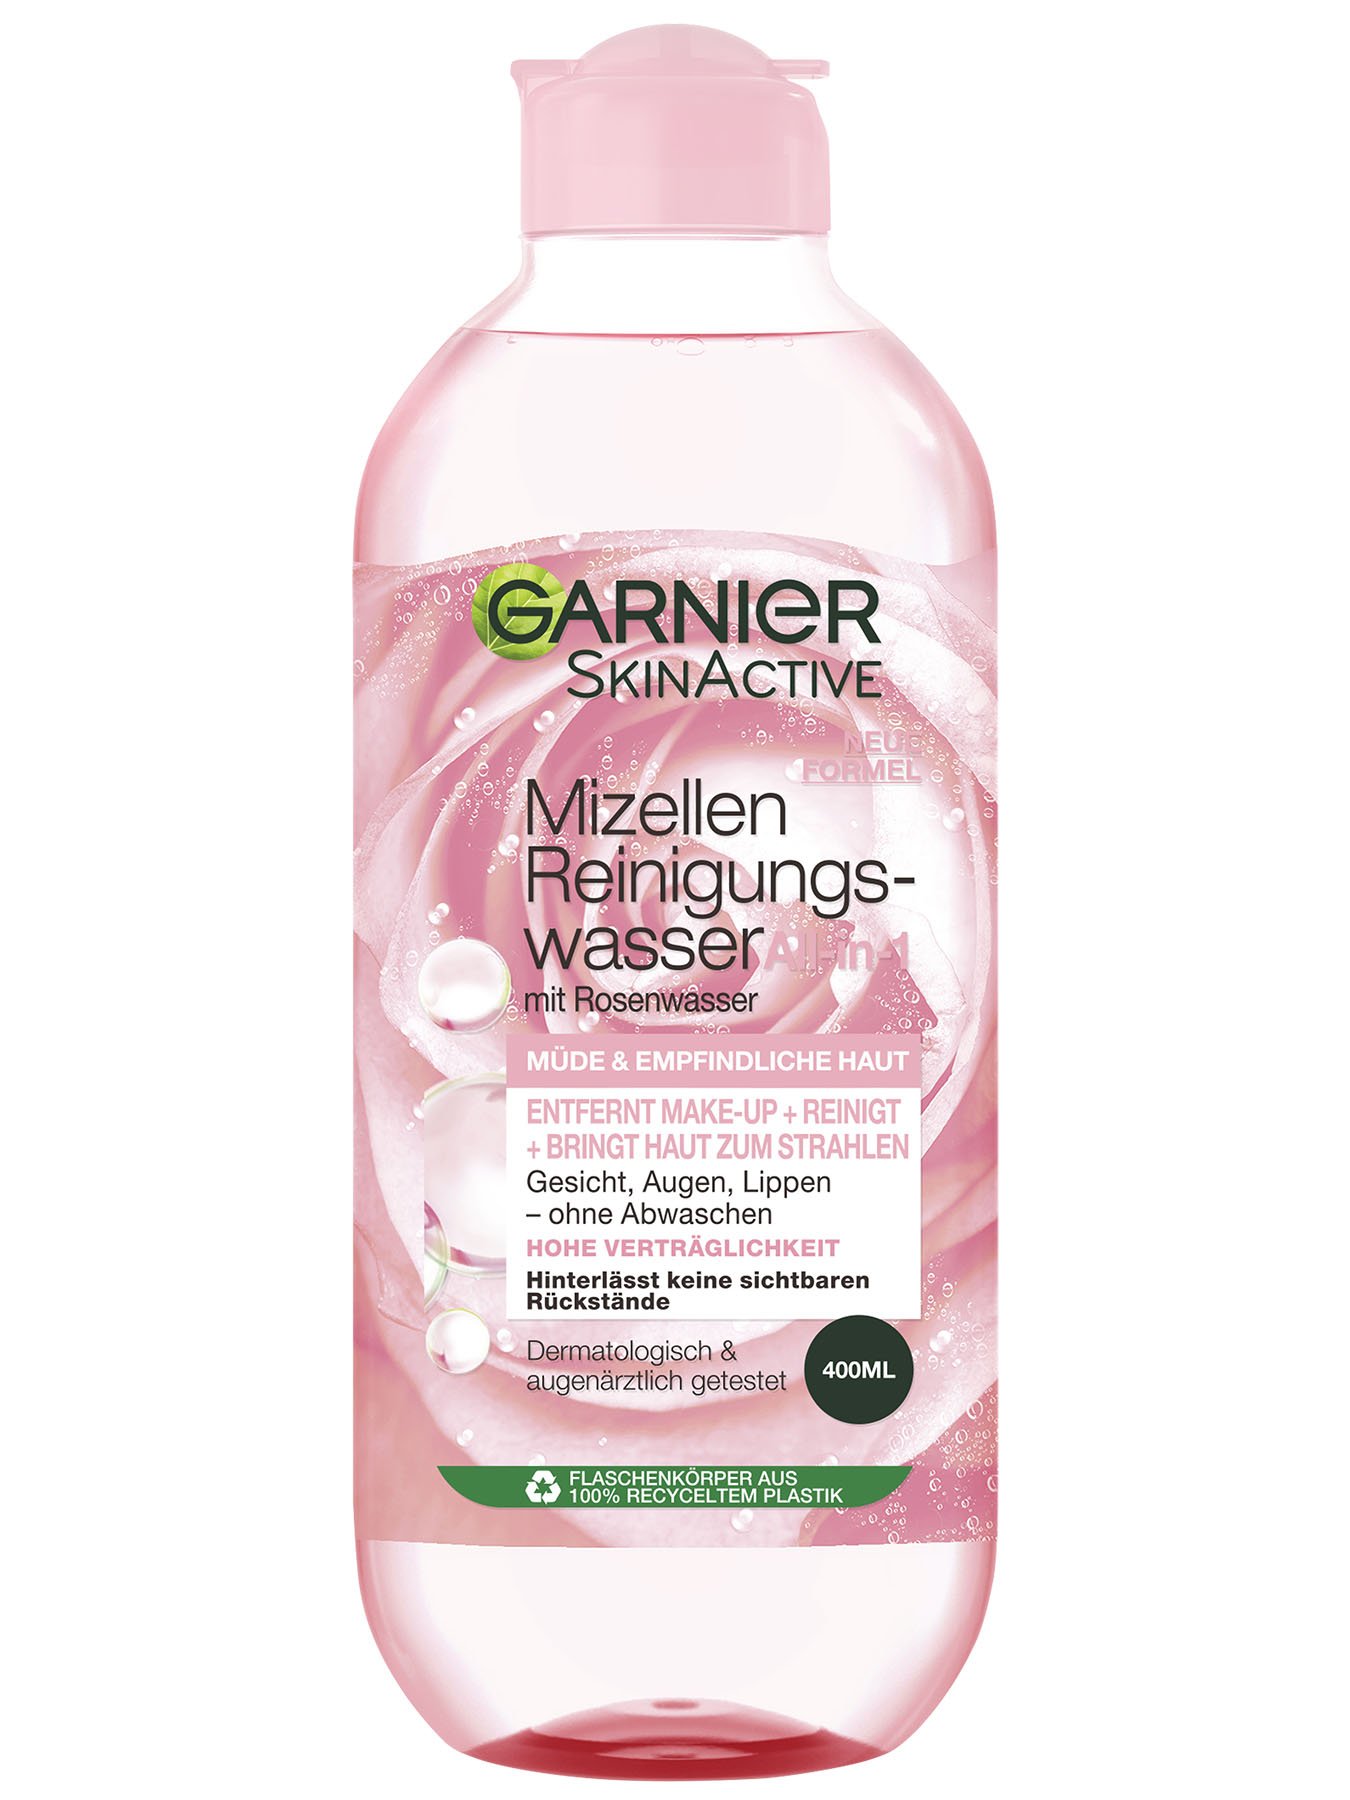 Schonende Reinigung & Feuchtigkeit mit Rosenwasser | Garnier